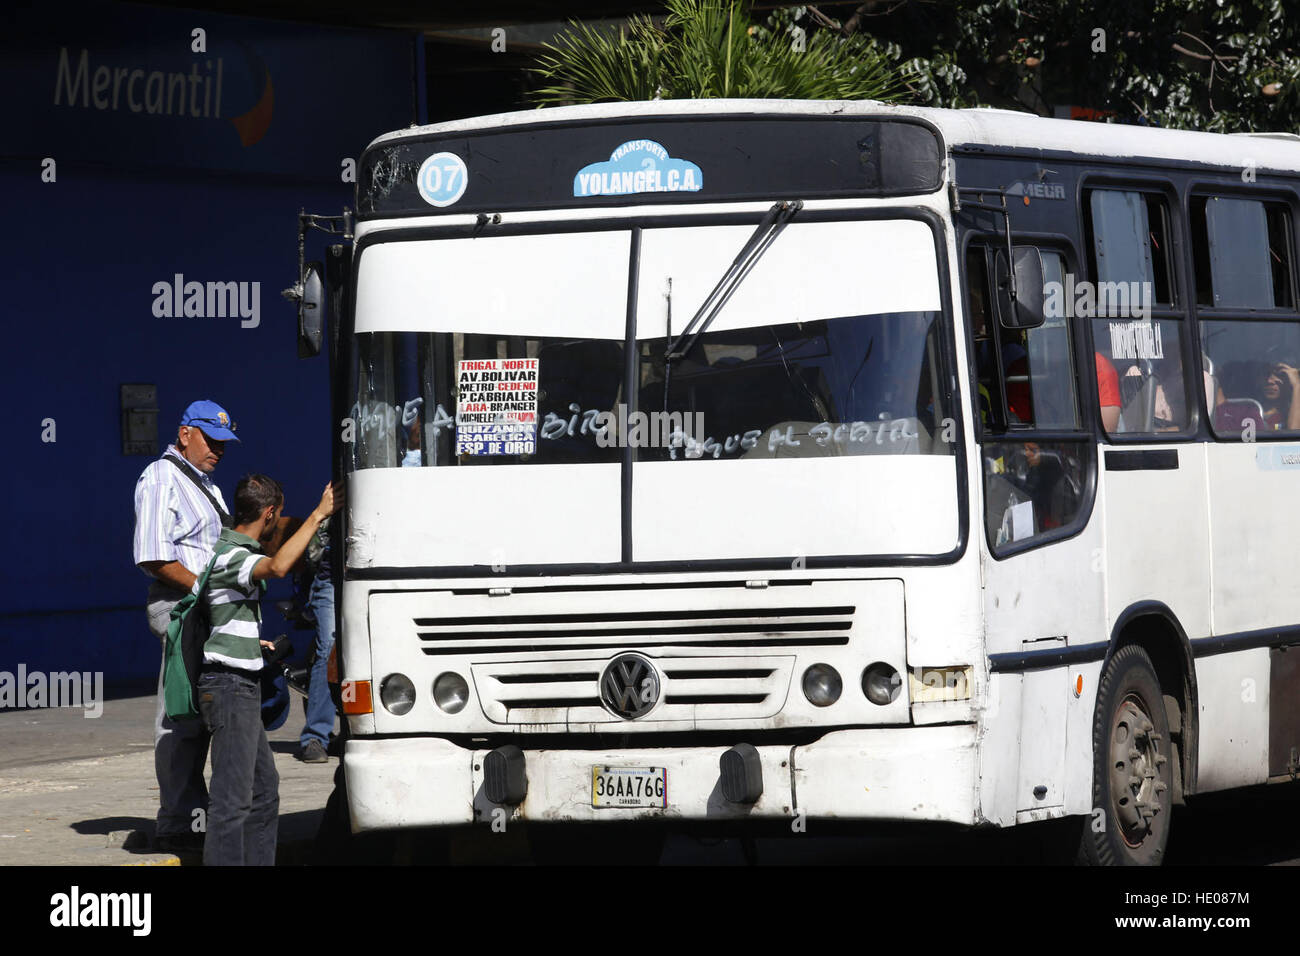 December 16, 2016 - Valencia, Carabobo, Venezuela - Unidades del transporte  publico se niega a recibir pago en billetes de cien bolivares, luego que el  presidente de Venezuela Nicolas Maduro, decretara la